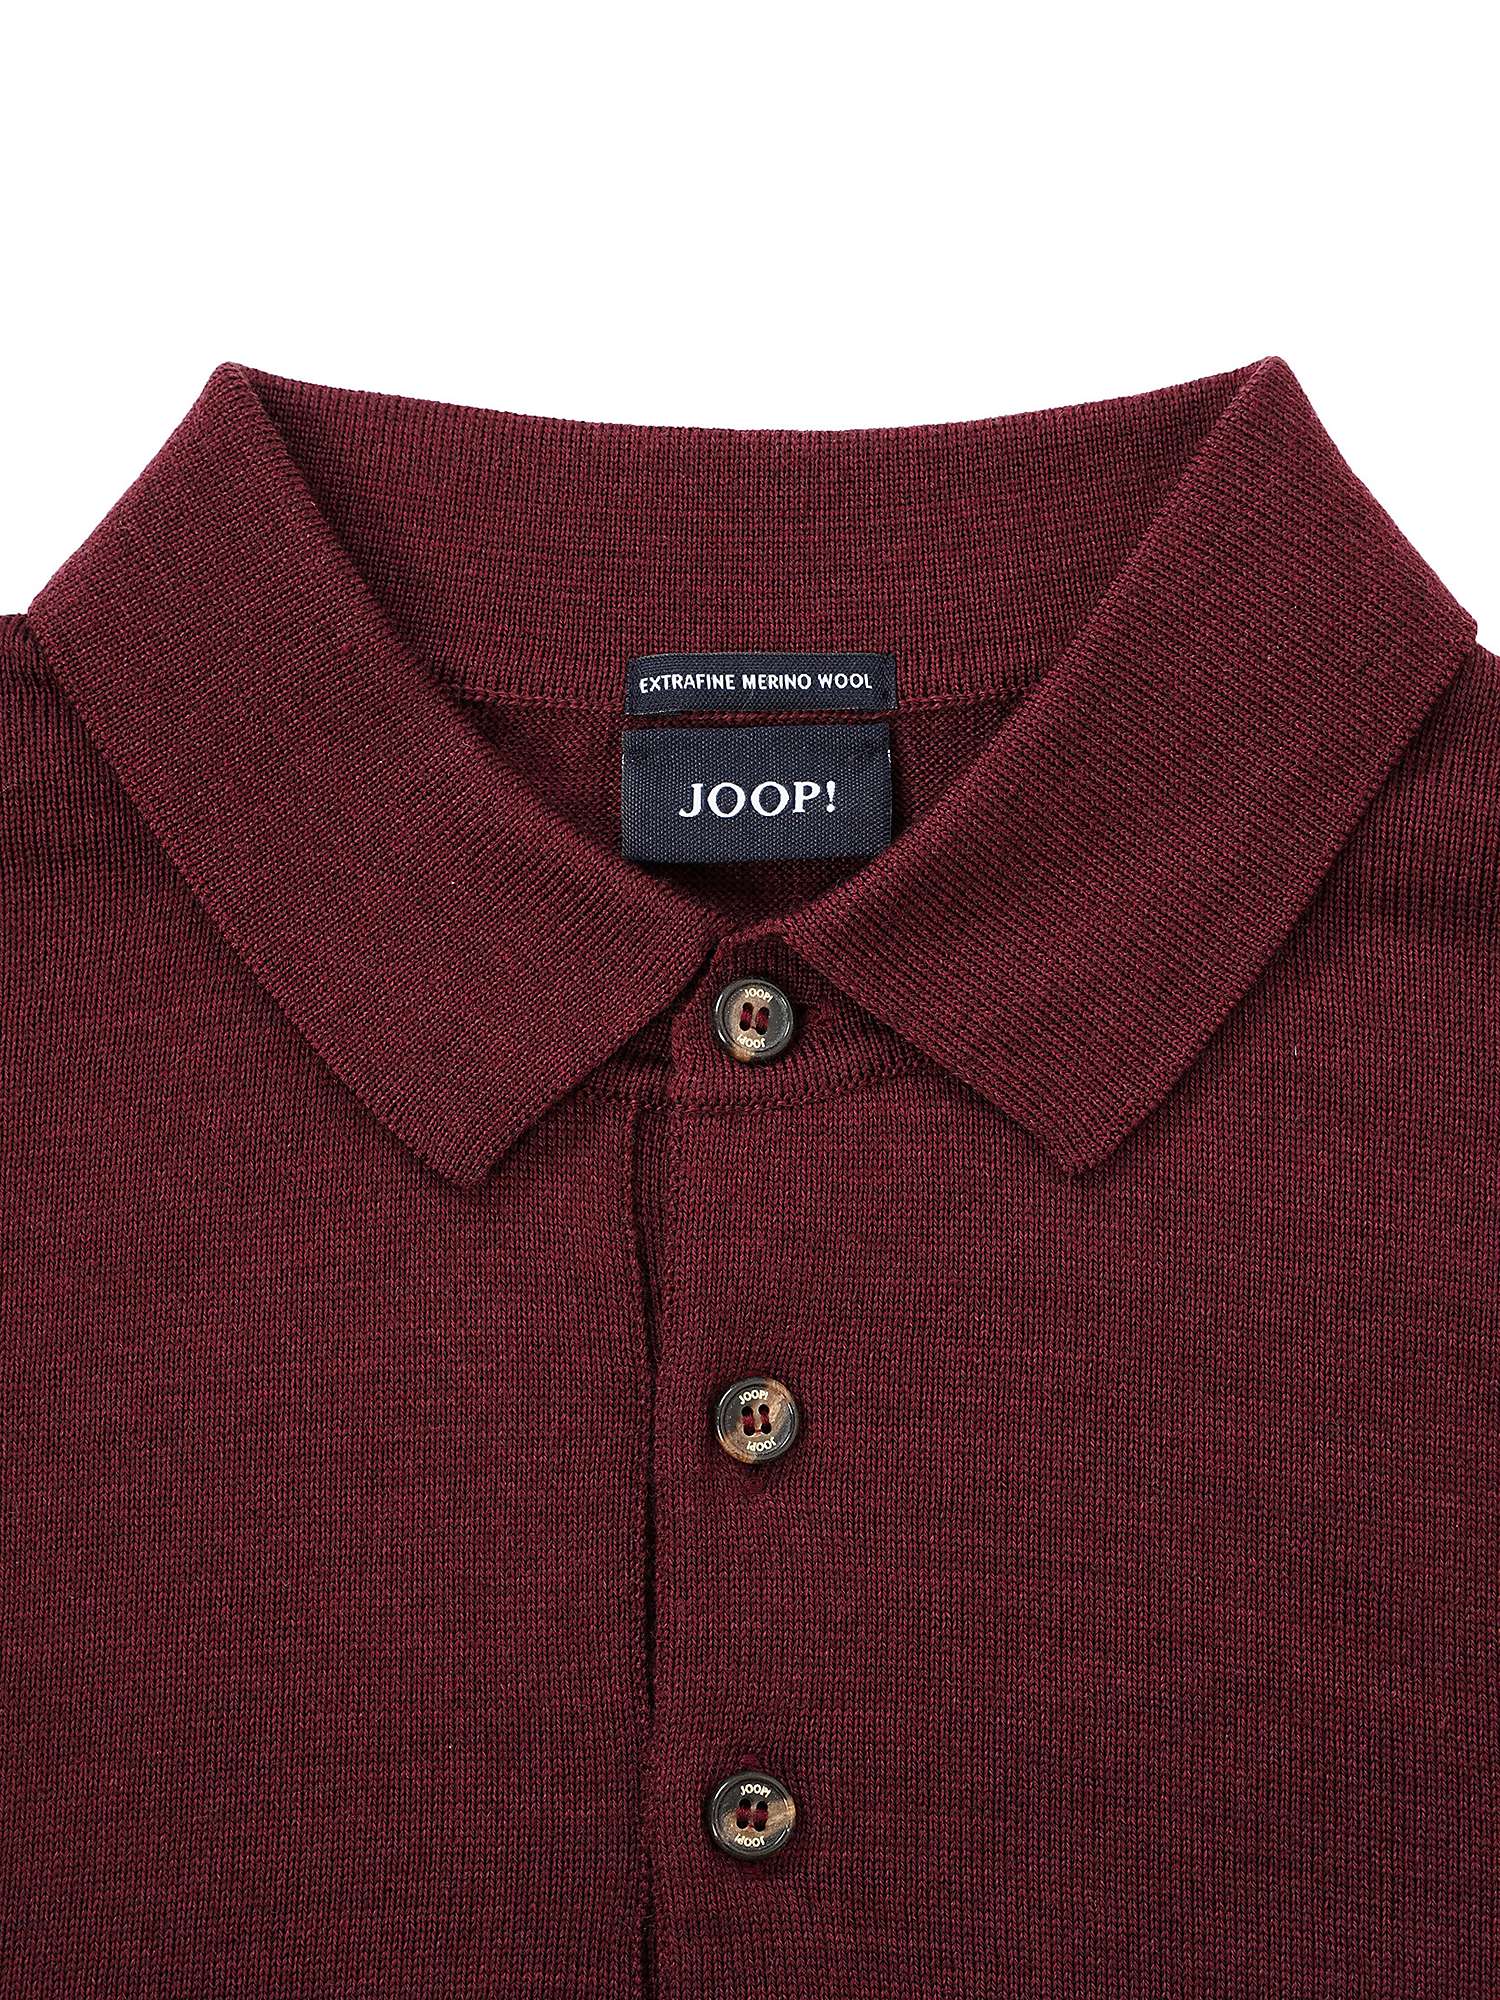 Buy JOOP! Dondo Wool Knitted Jumper Online at johnlewis.com